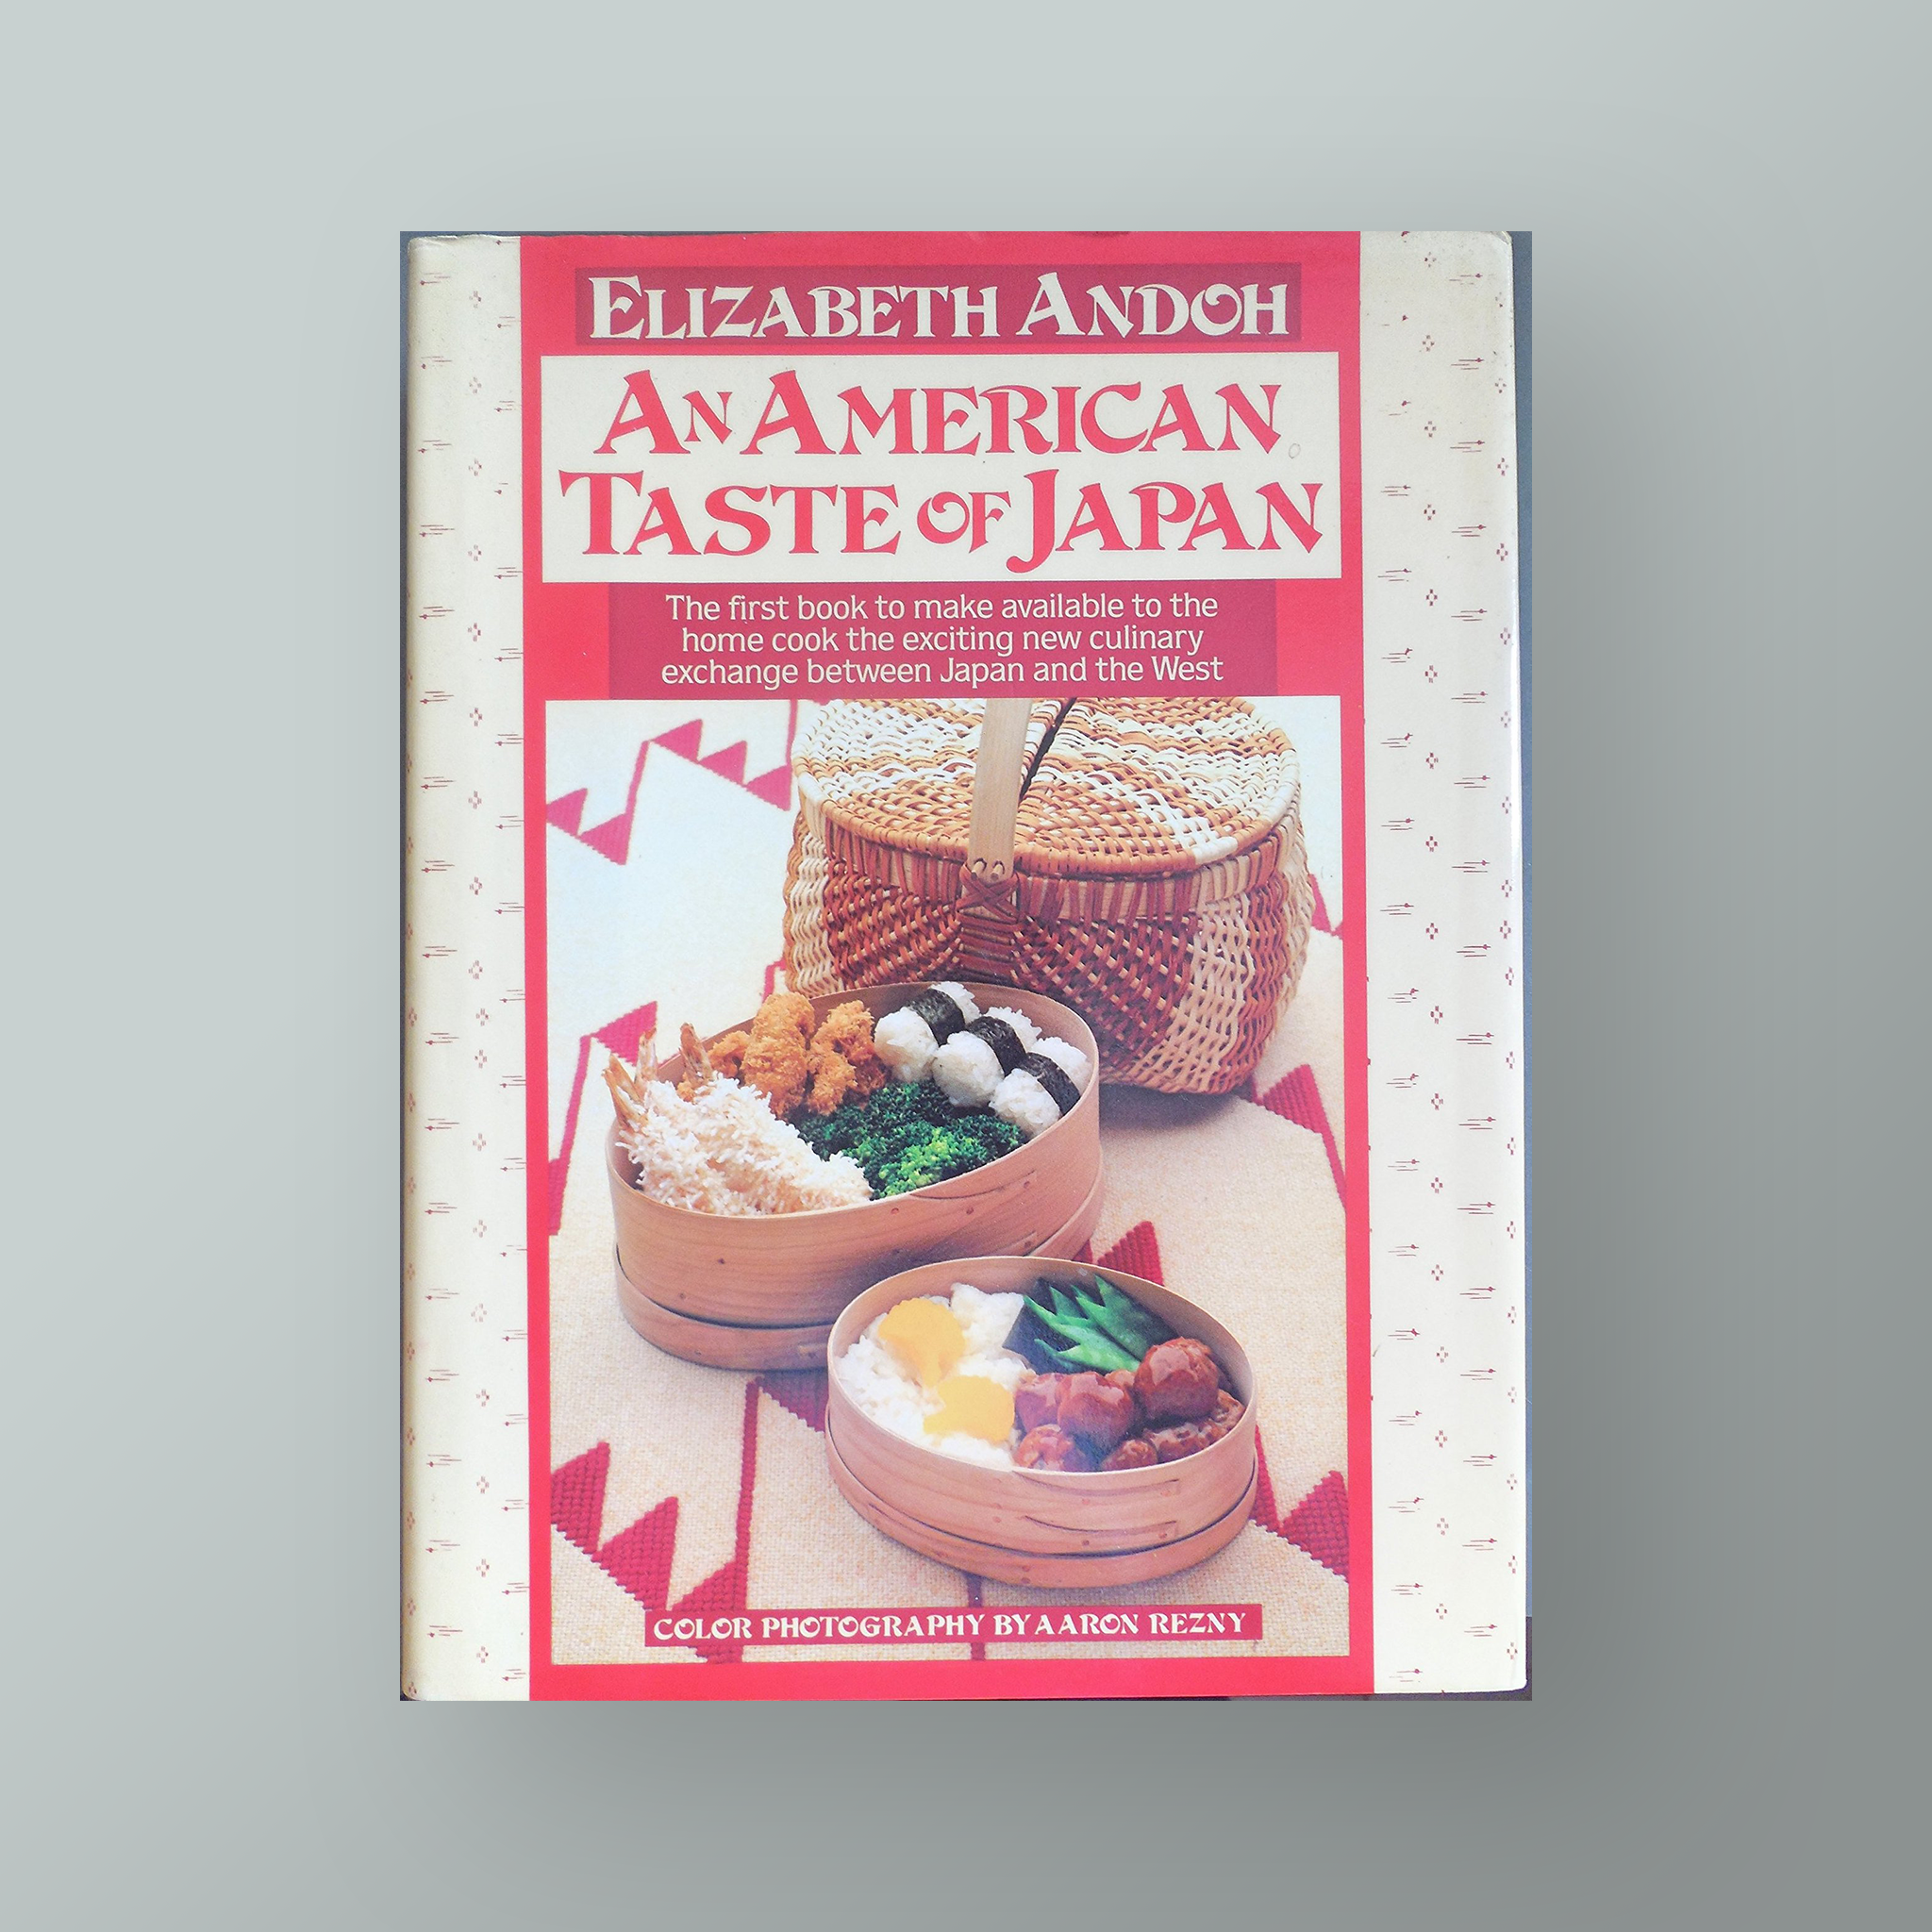 An American Taste of Japan